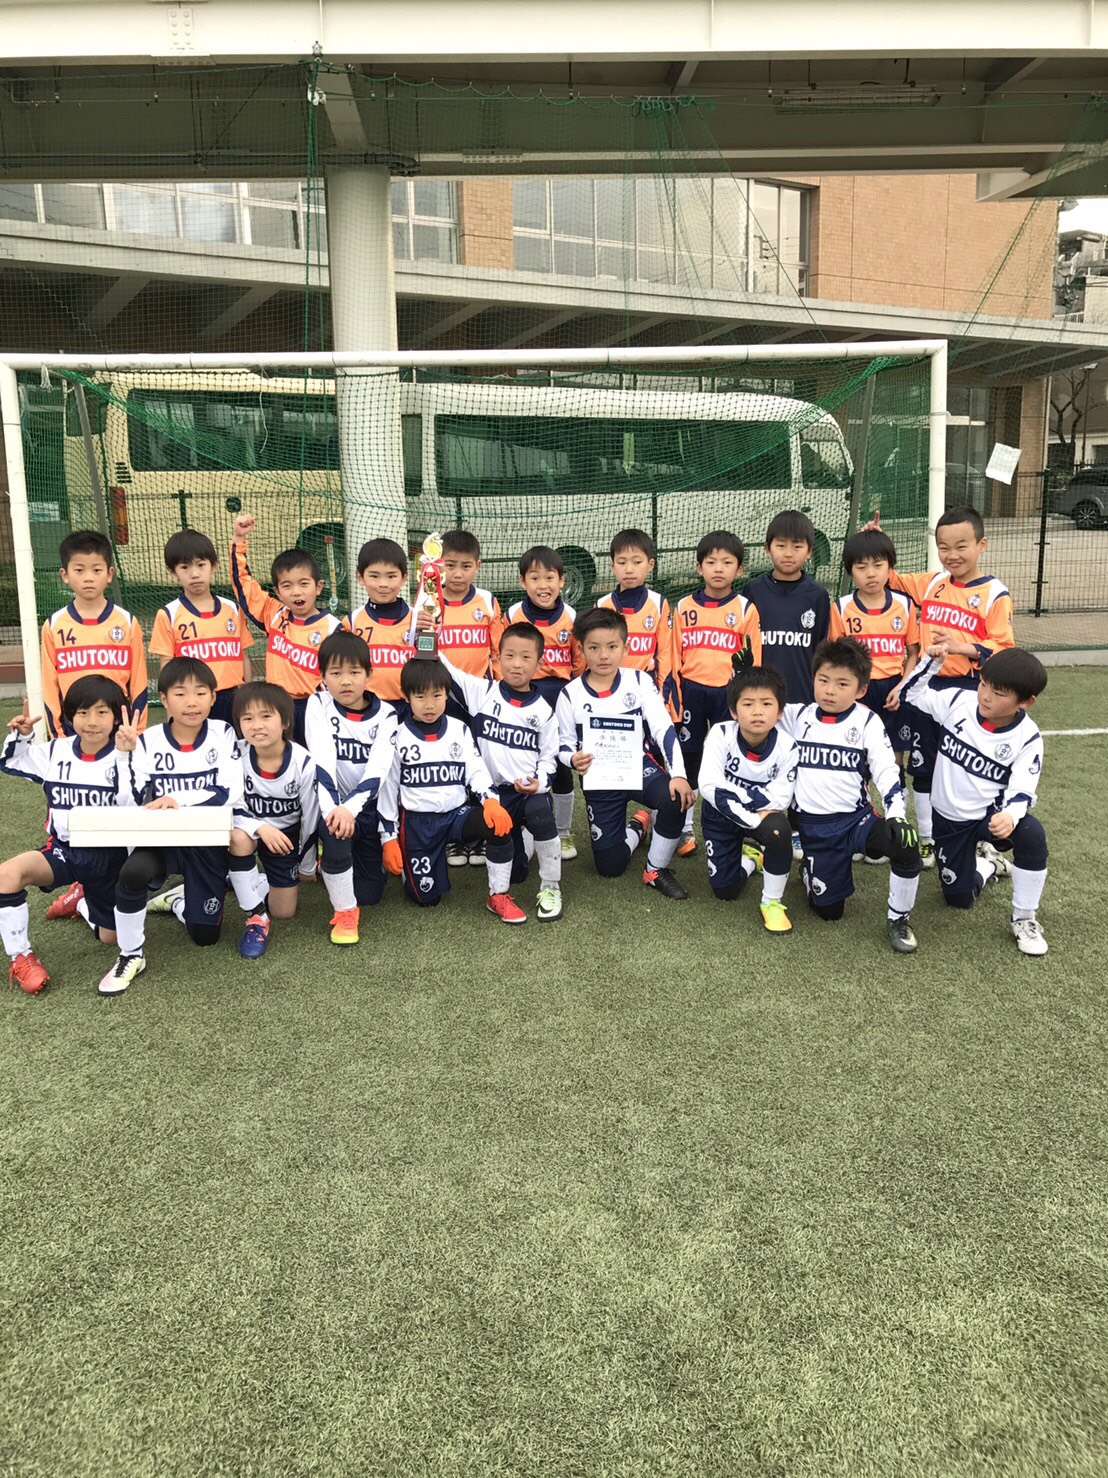 修徳fc ジュニア選手コース 幼児 小学生のサッカースクール 17 2月